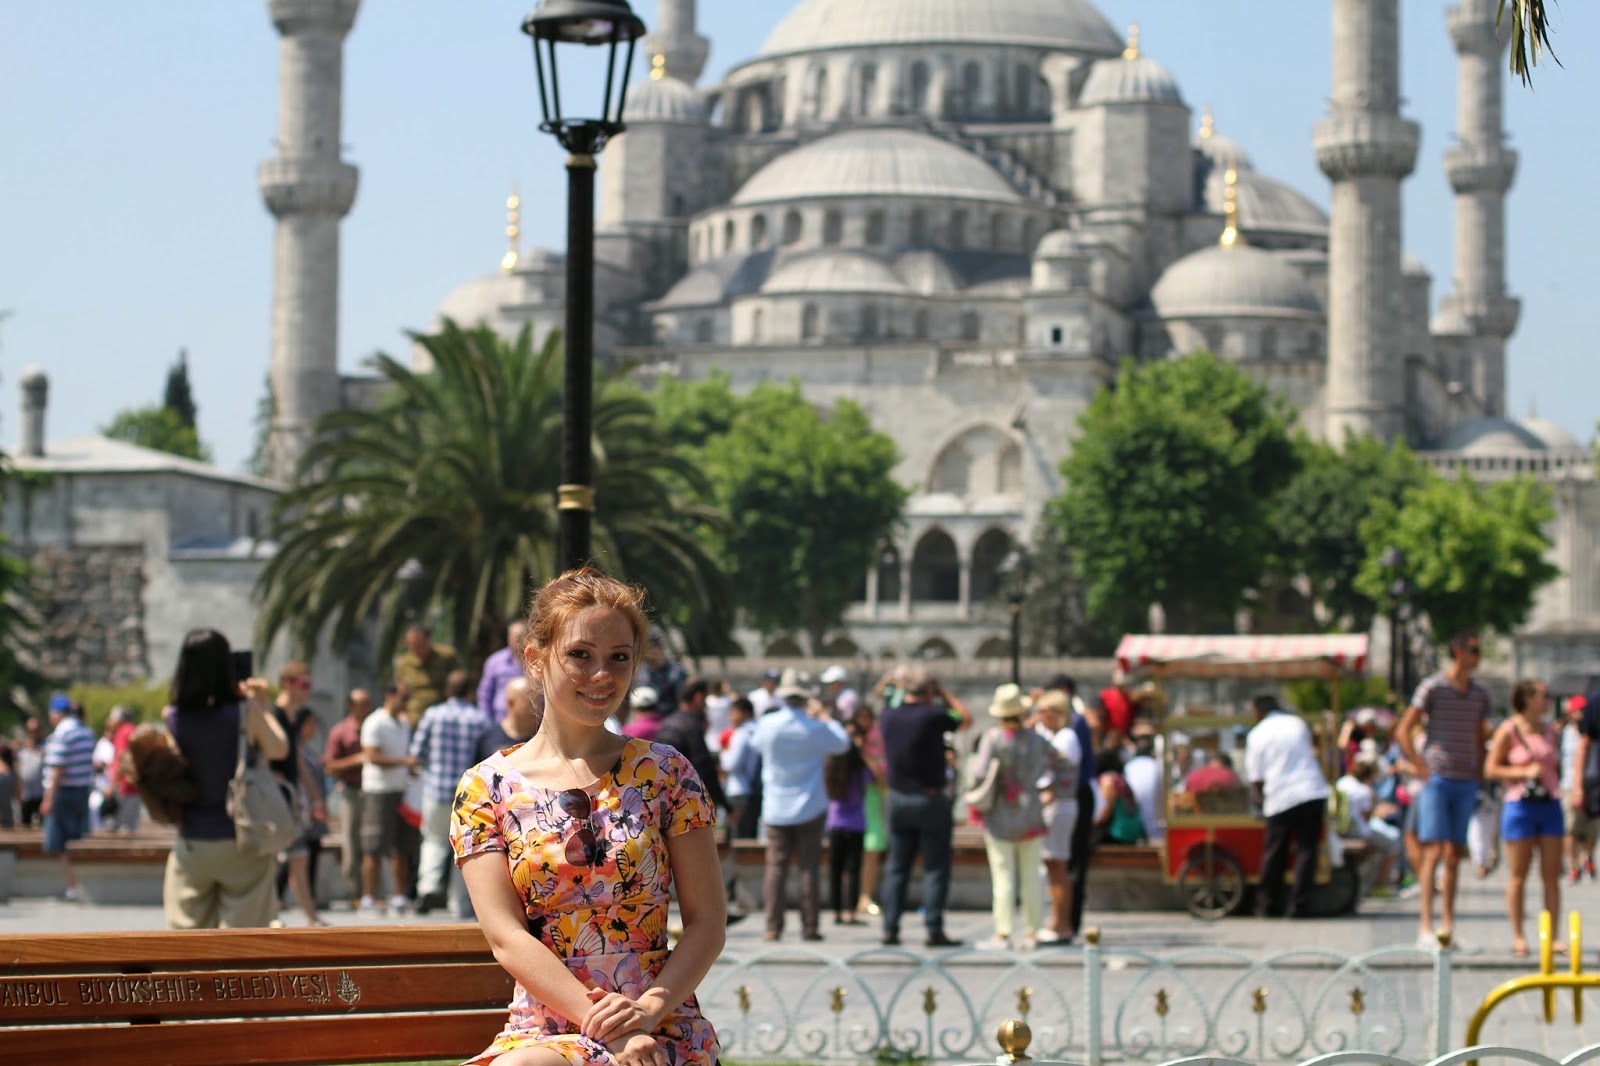 После стамбула. Стамбул девушка. Фото девушек в Стамбуле. Стамбул в апреле девушки. Голубая мечеть Стамбул фото девушки.